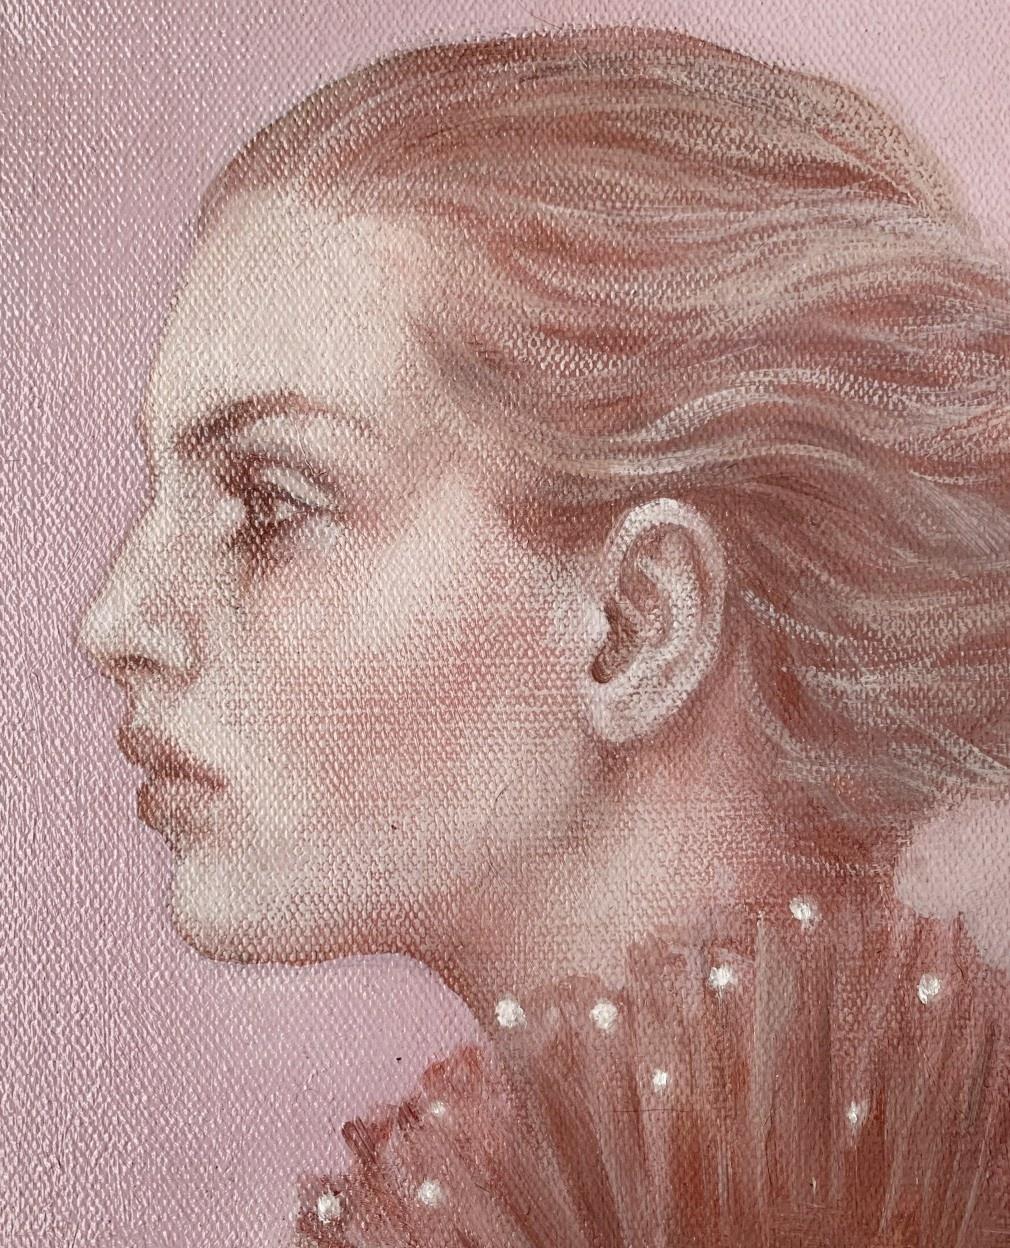 Ein Porträt – zeitgenössisches figuratives Ölgemälde, subtile weibliche Künstlerin (Romantik), Painting, von Katarzyna Szydlowska